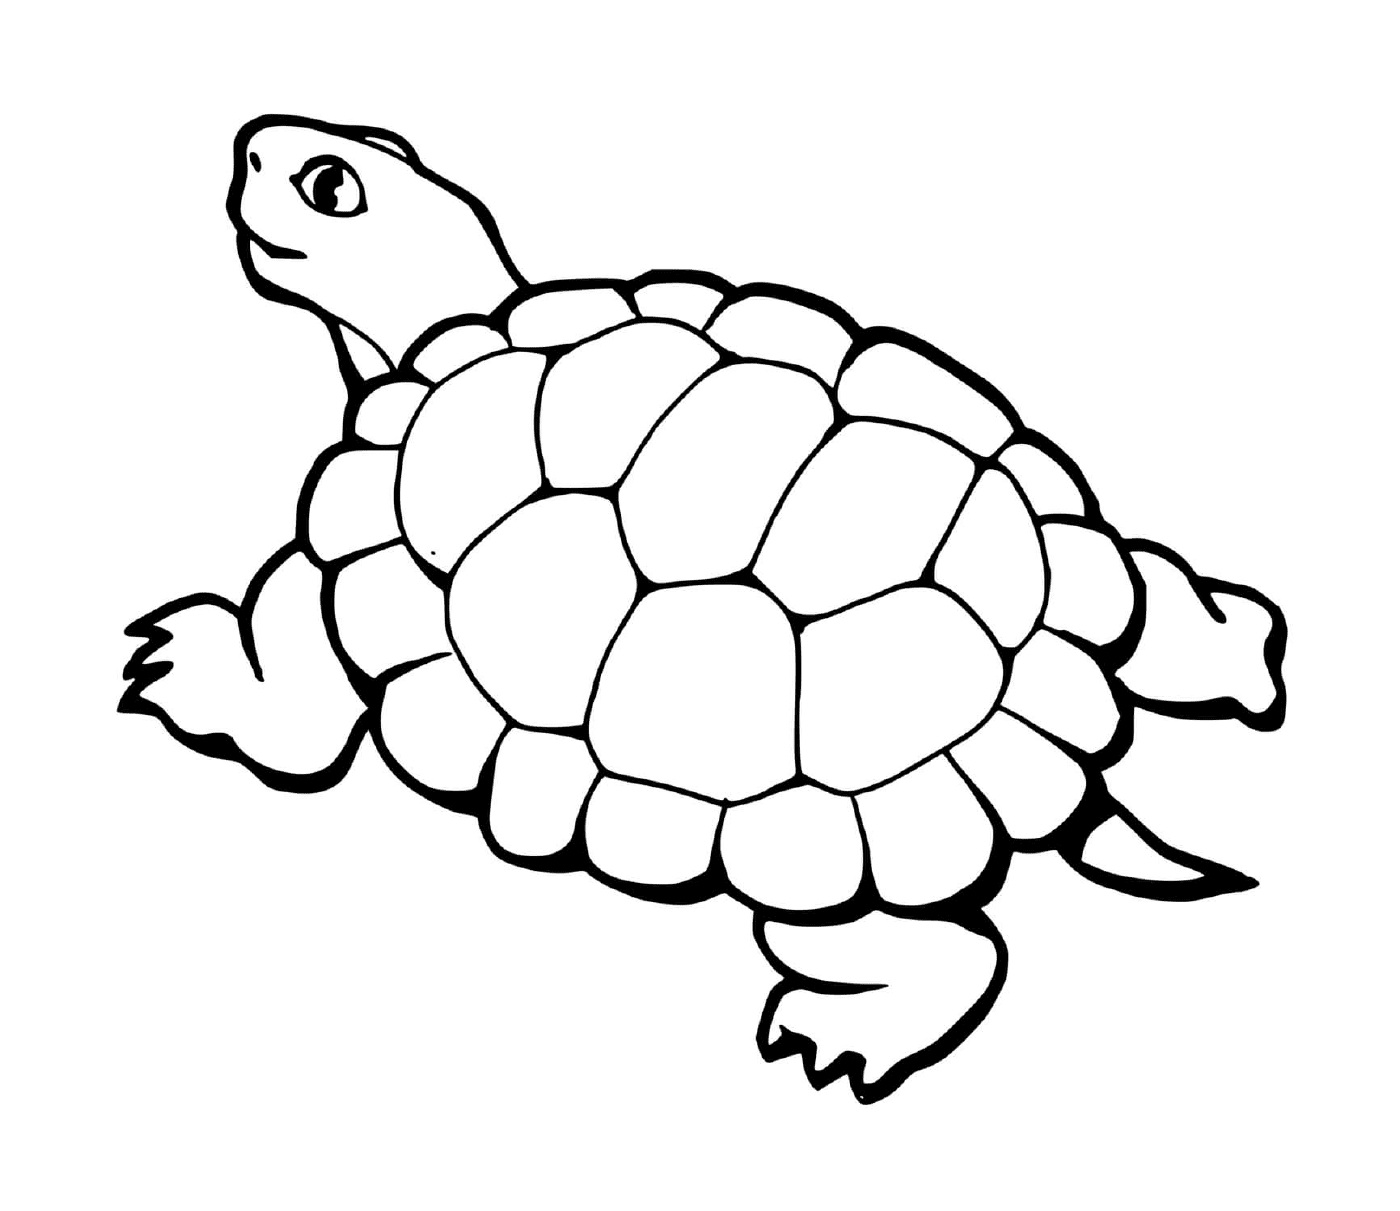  Schildkröte mit Schwanz 